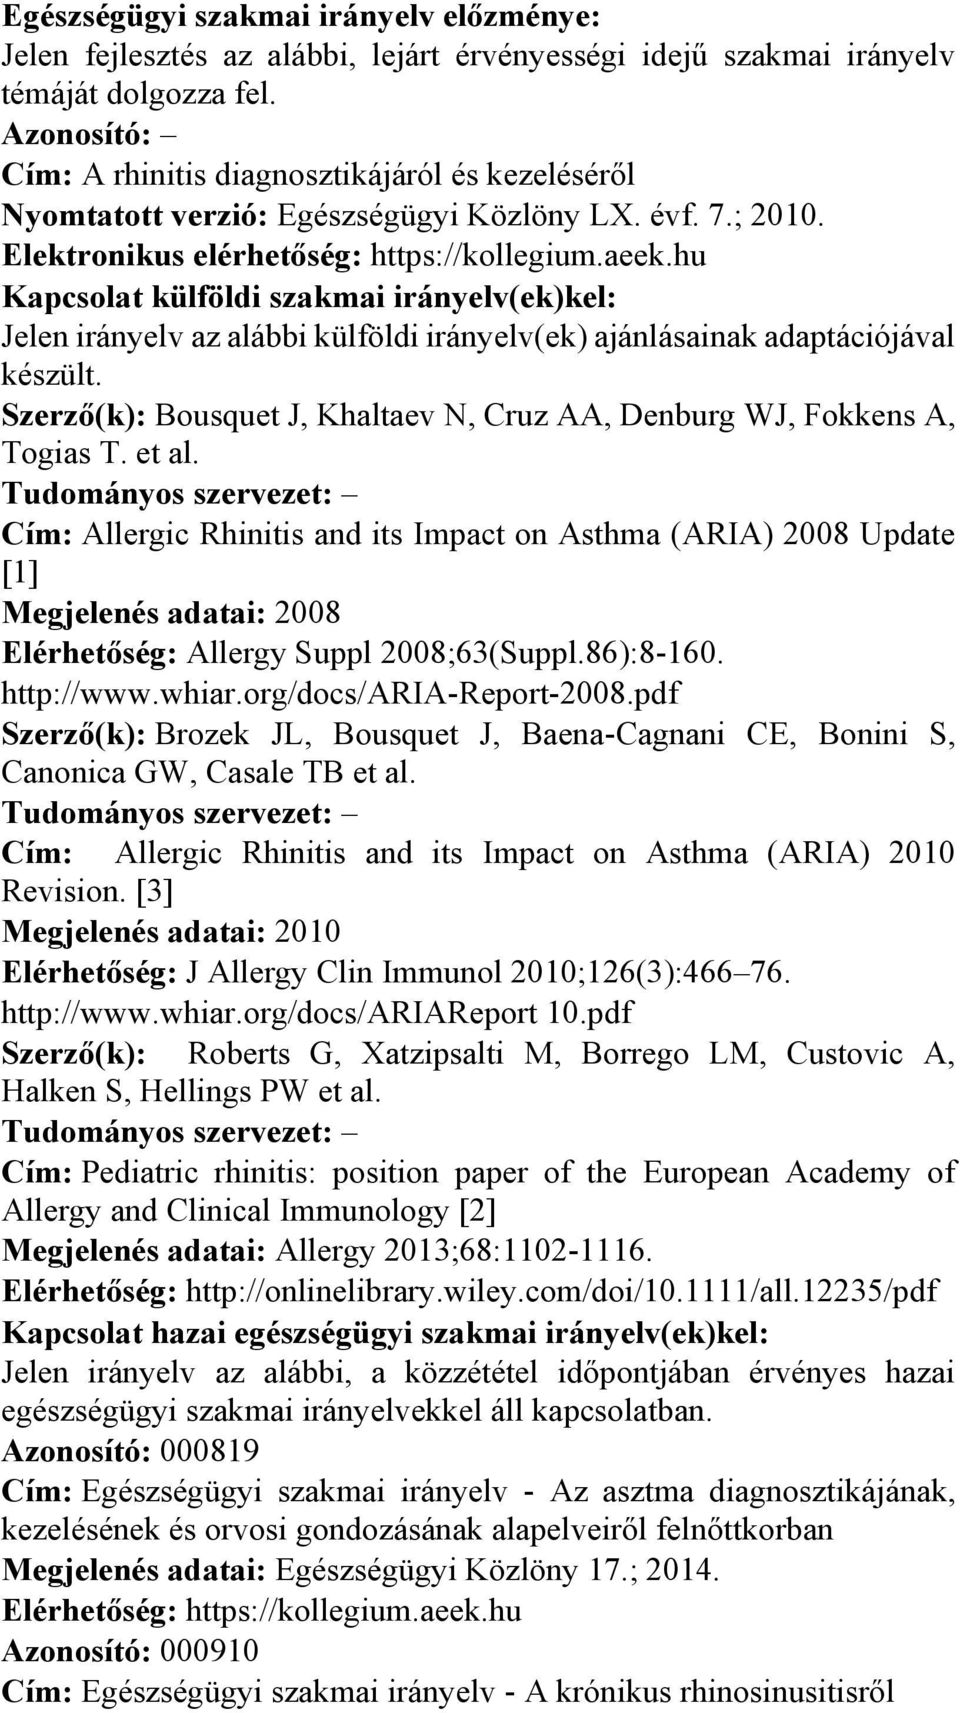 Az Emberi Erőforrások Minisztériuma szakmai irányelve az allergiás rhinitis  ellátásáról - PDF Ingyenes letöltés